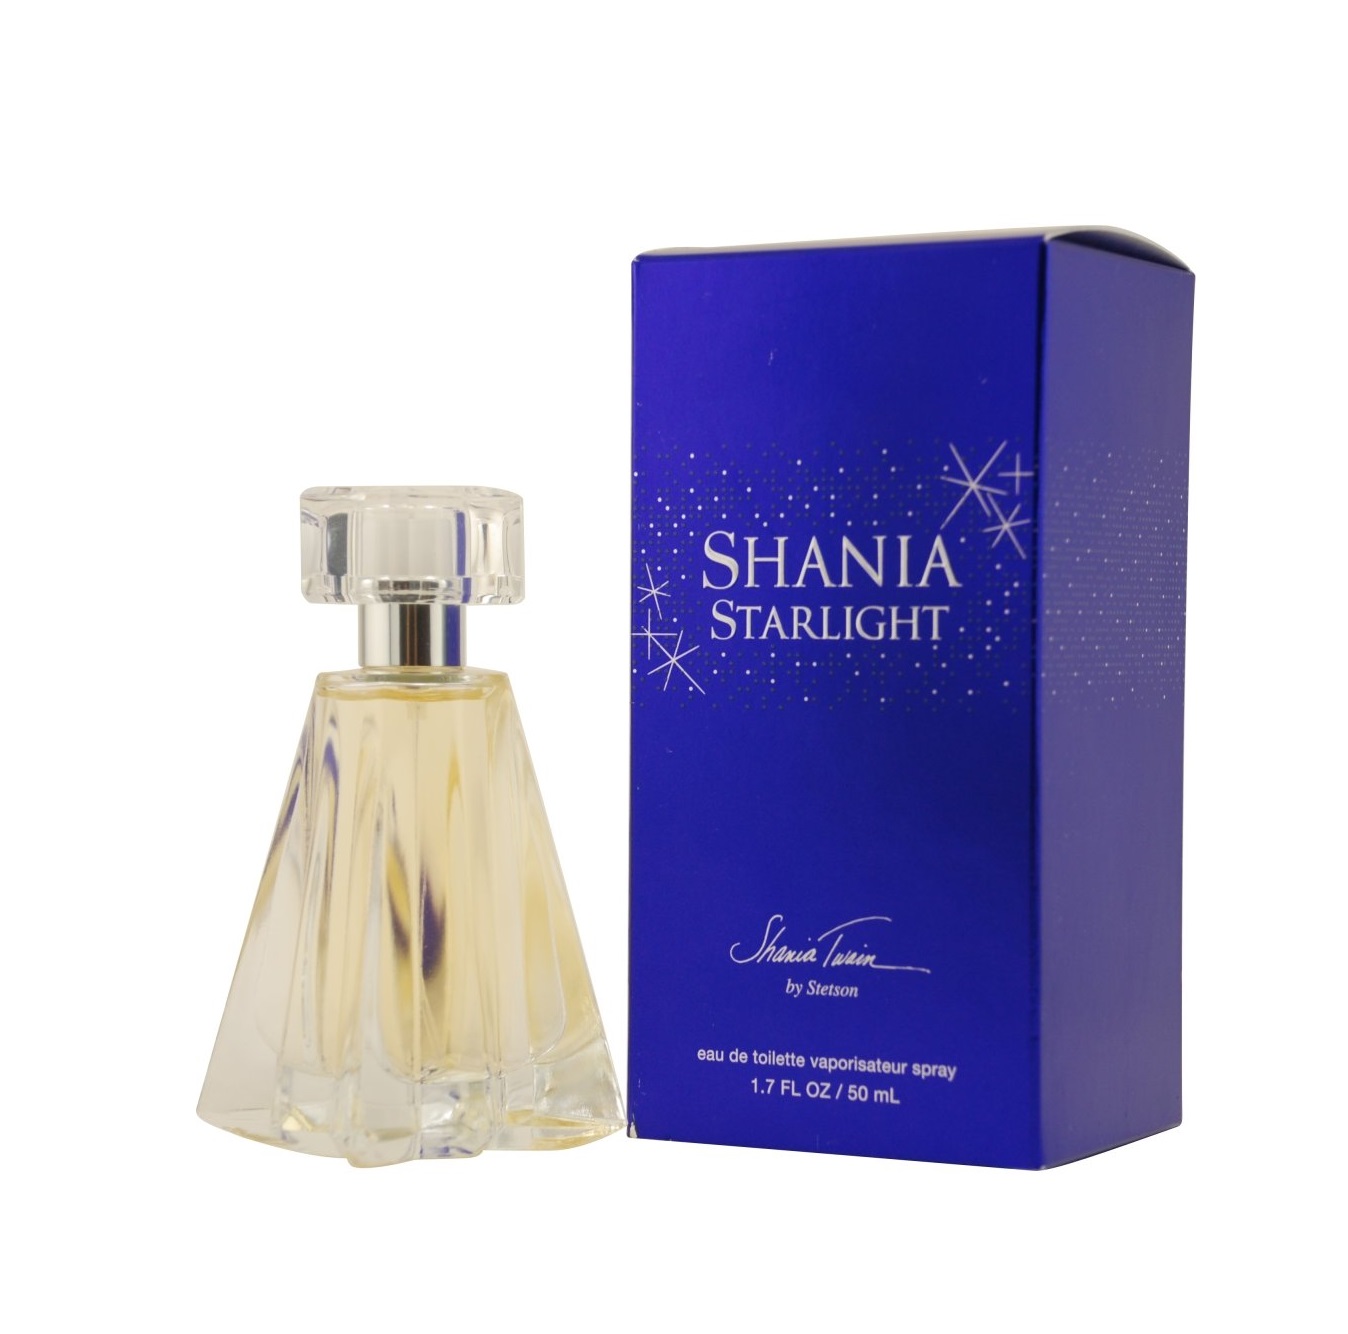 SHANIA STARLIGHT BY SHANIA TWAIN EDT 50 ML